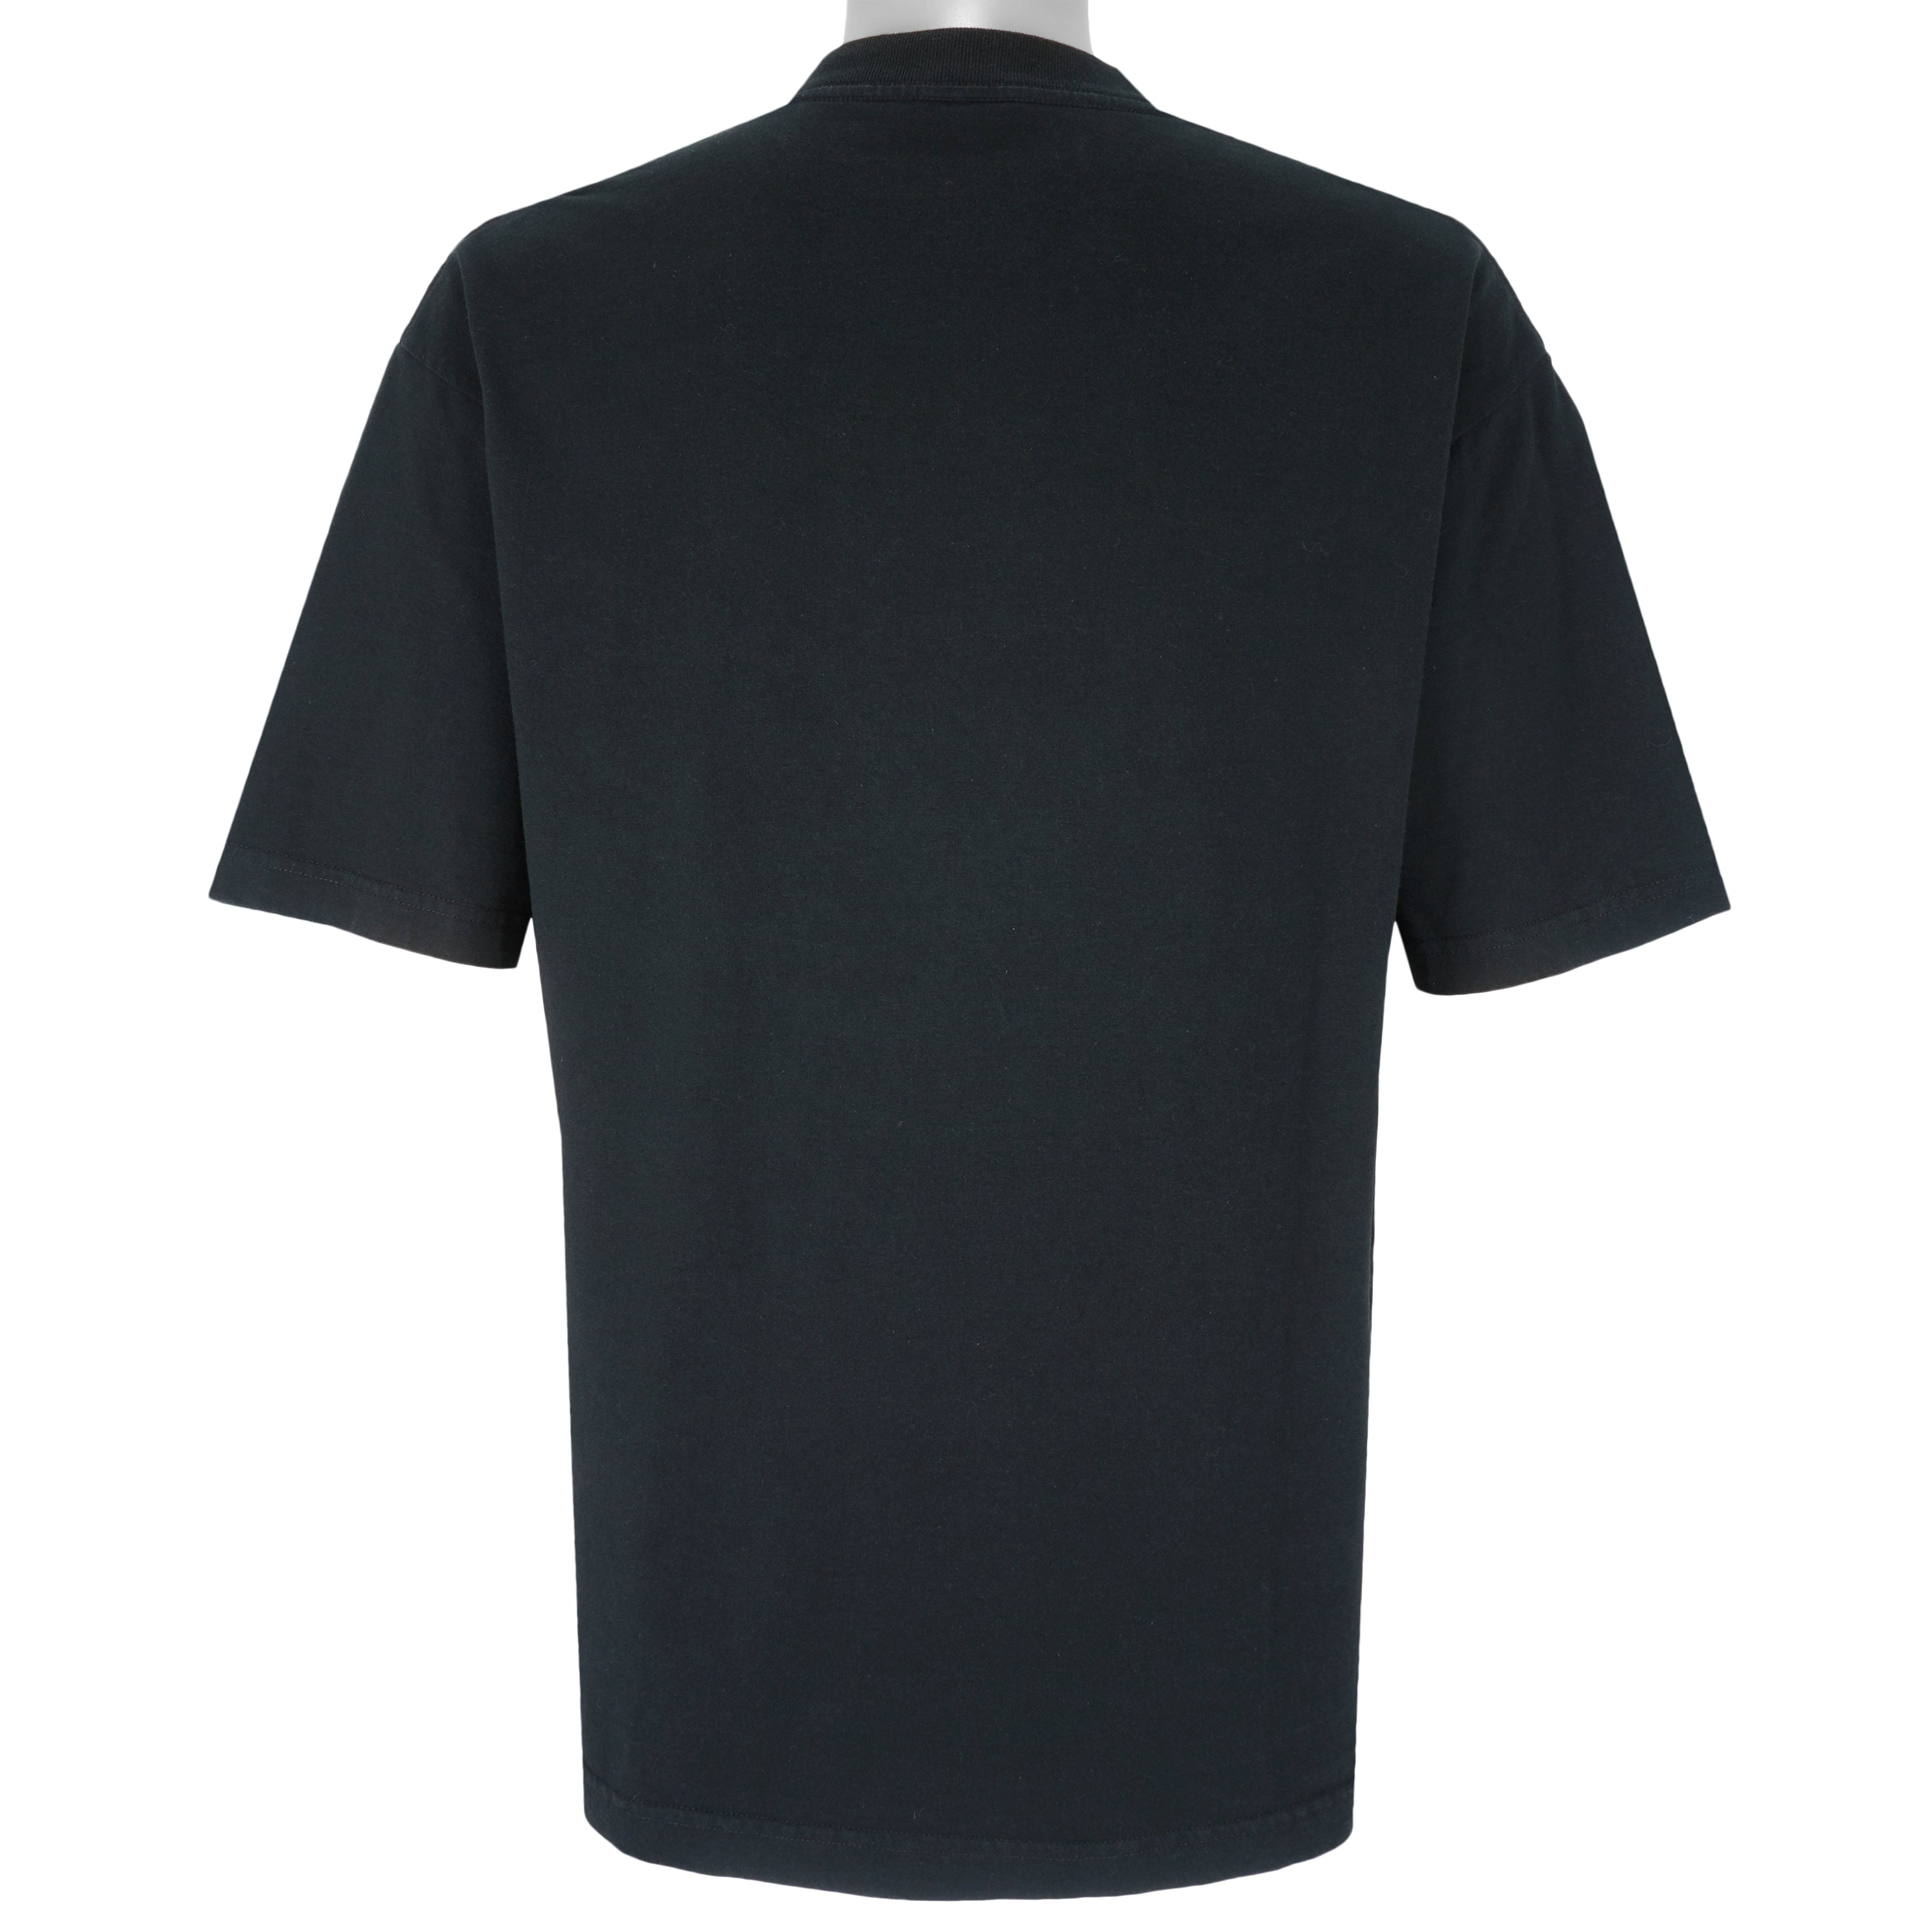 Vintage Colorado Avalanche Black T-Shirt Size XL